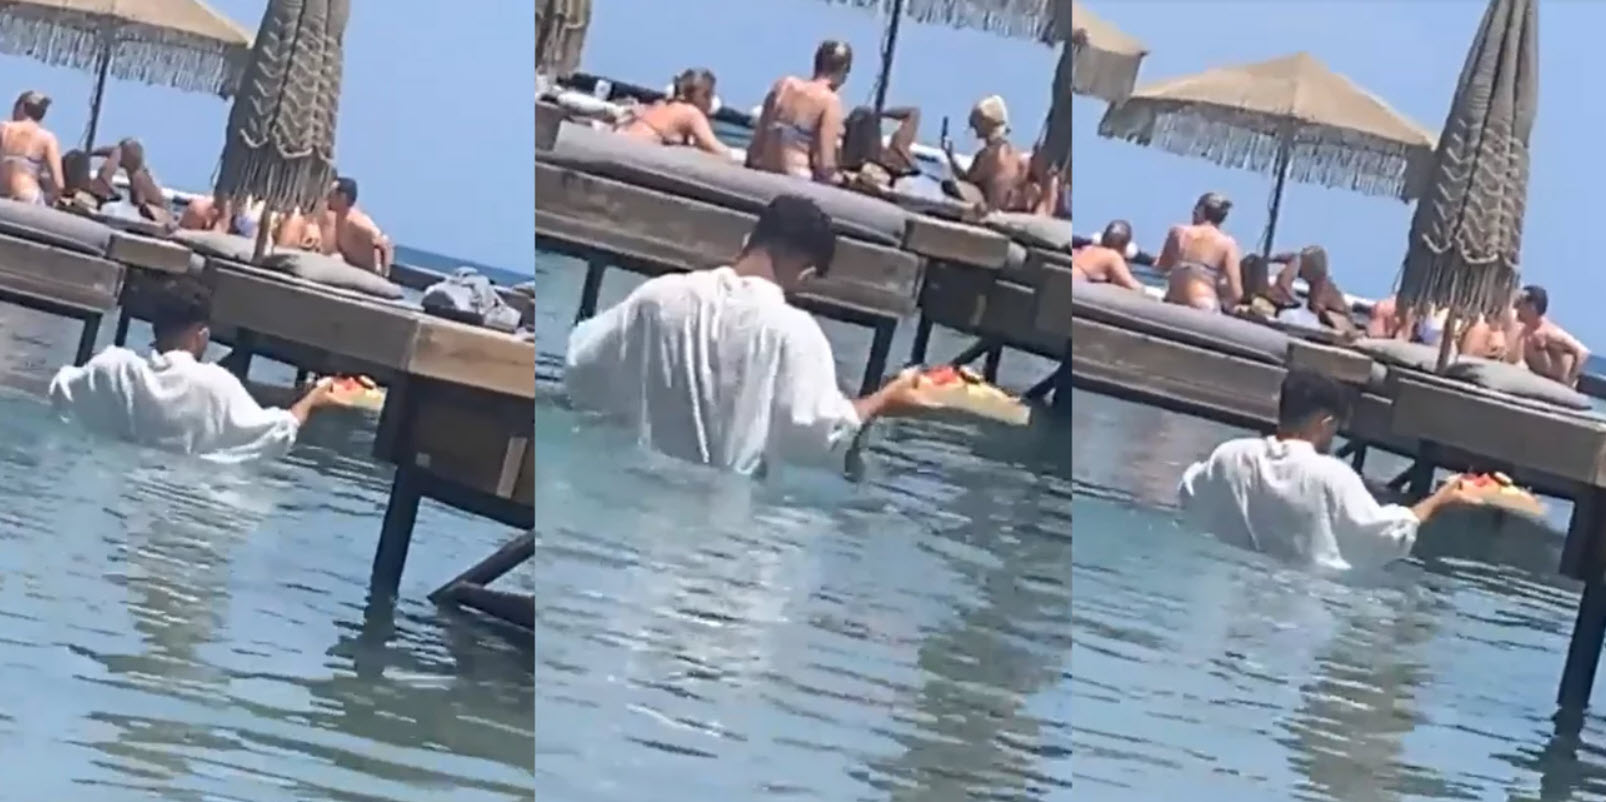 Ρόδος: Άμεση παρέμβαση Γεωργιάδη για το εξοργιστικό βίντεο με τον σερβιτόρο που πάει παραγγελία σχεδόν... κολυμπώντας!